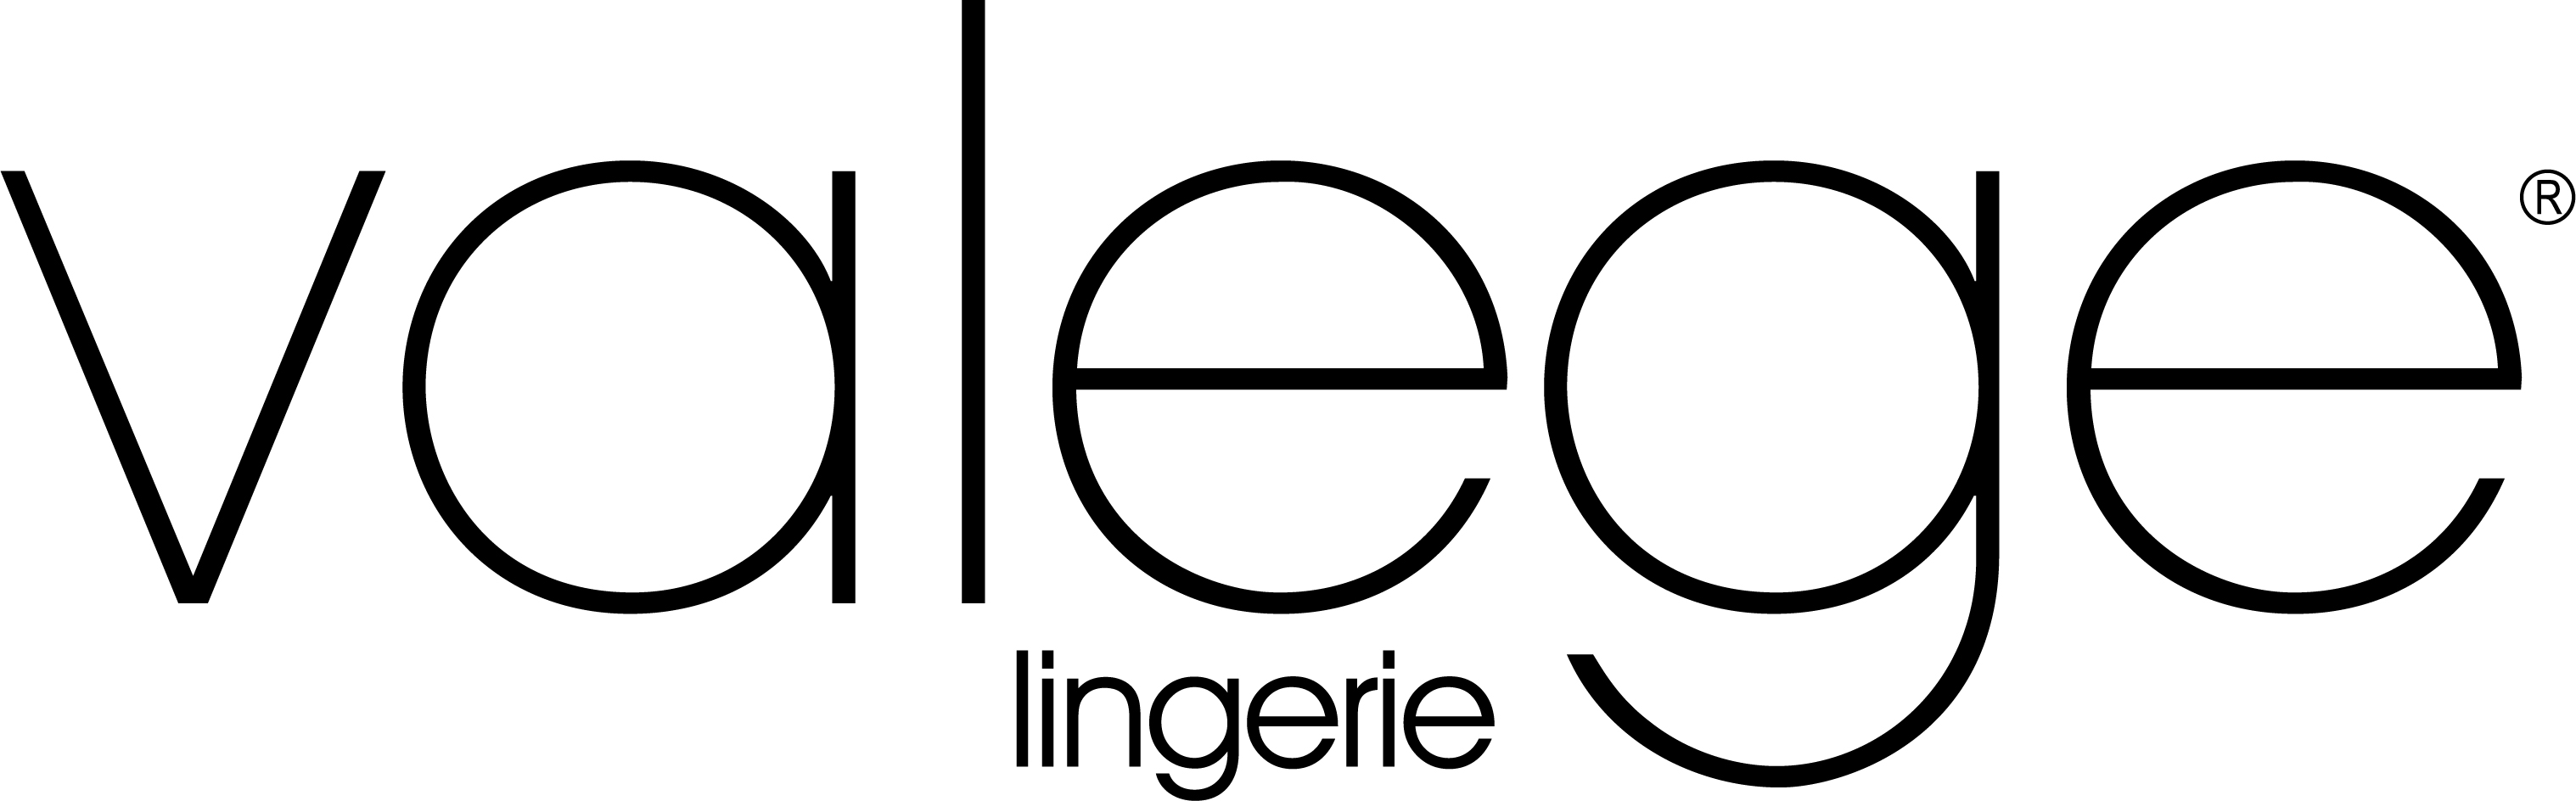 VALEGE-lingerie_logo